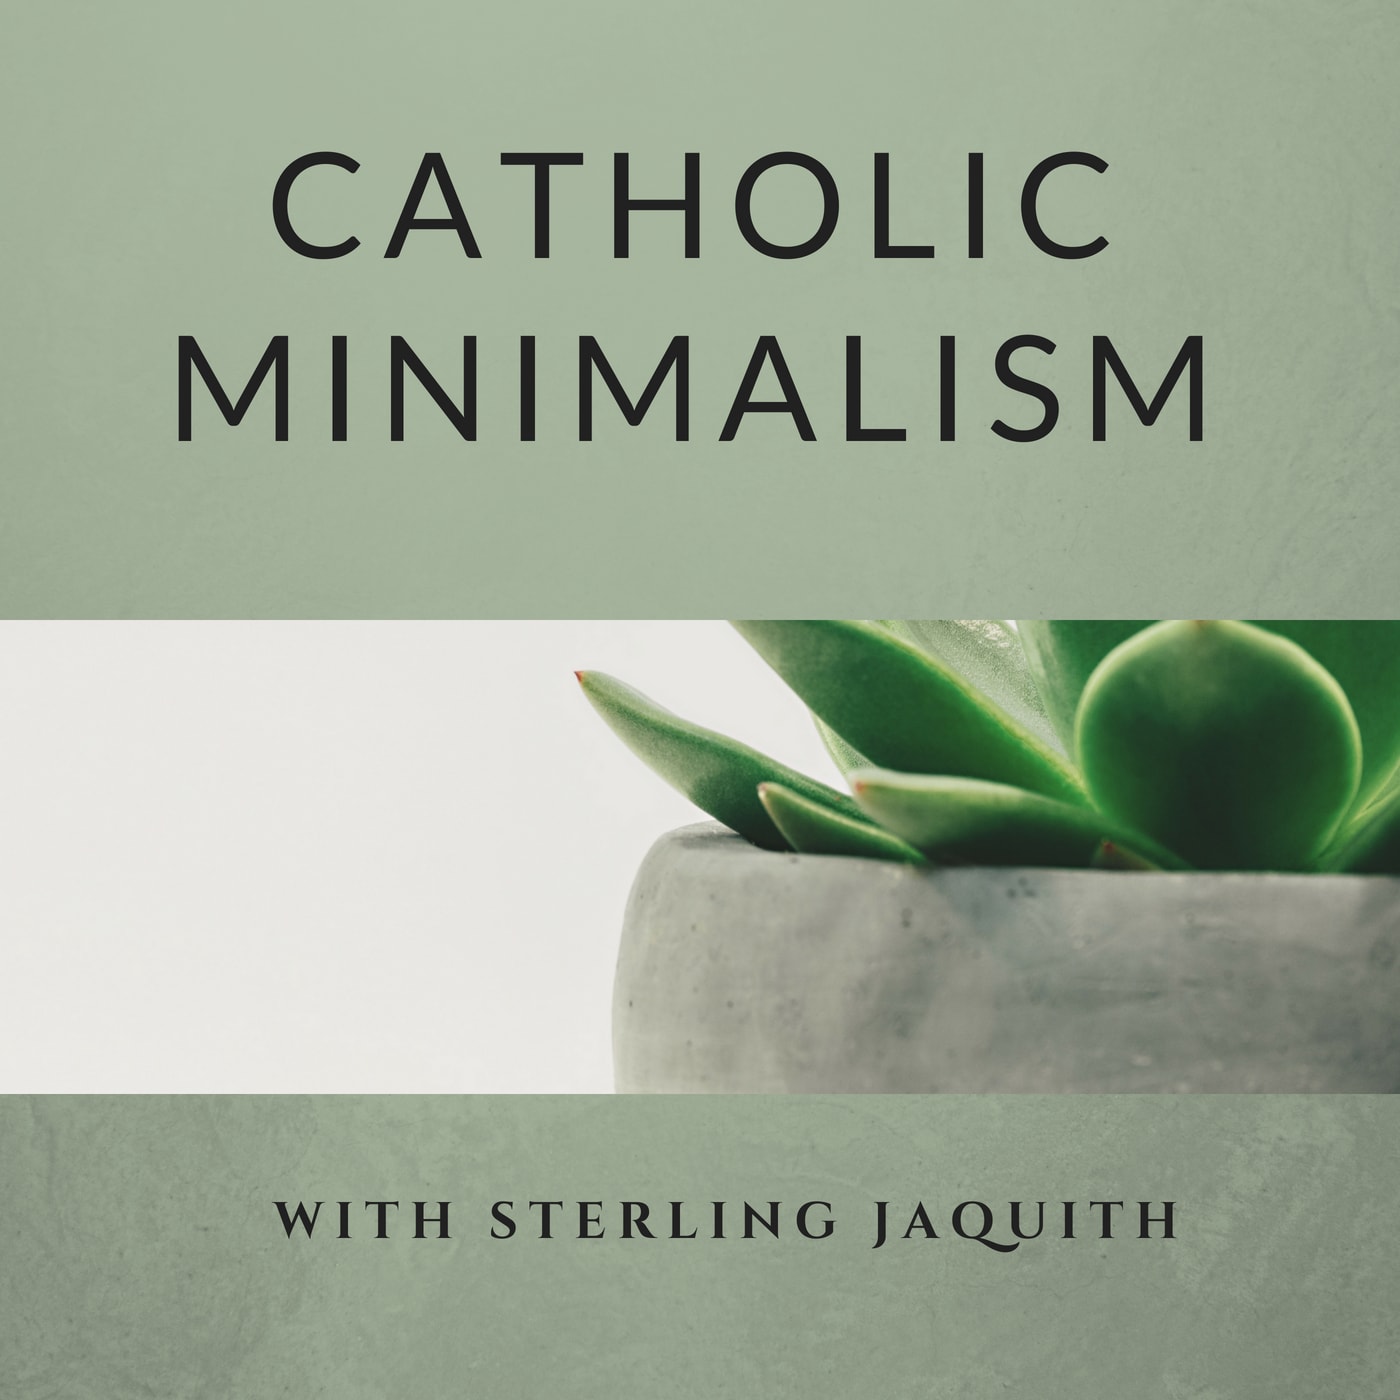 Catholic Minimalism Ep 01 - Podcast Introduction